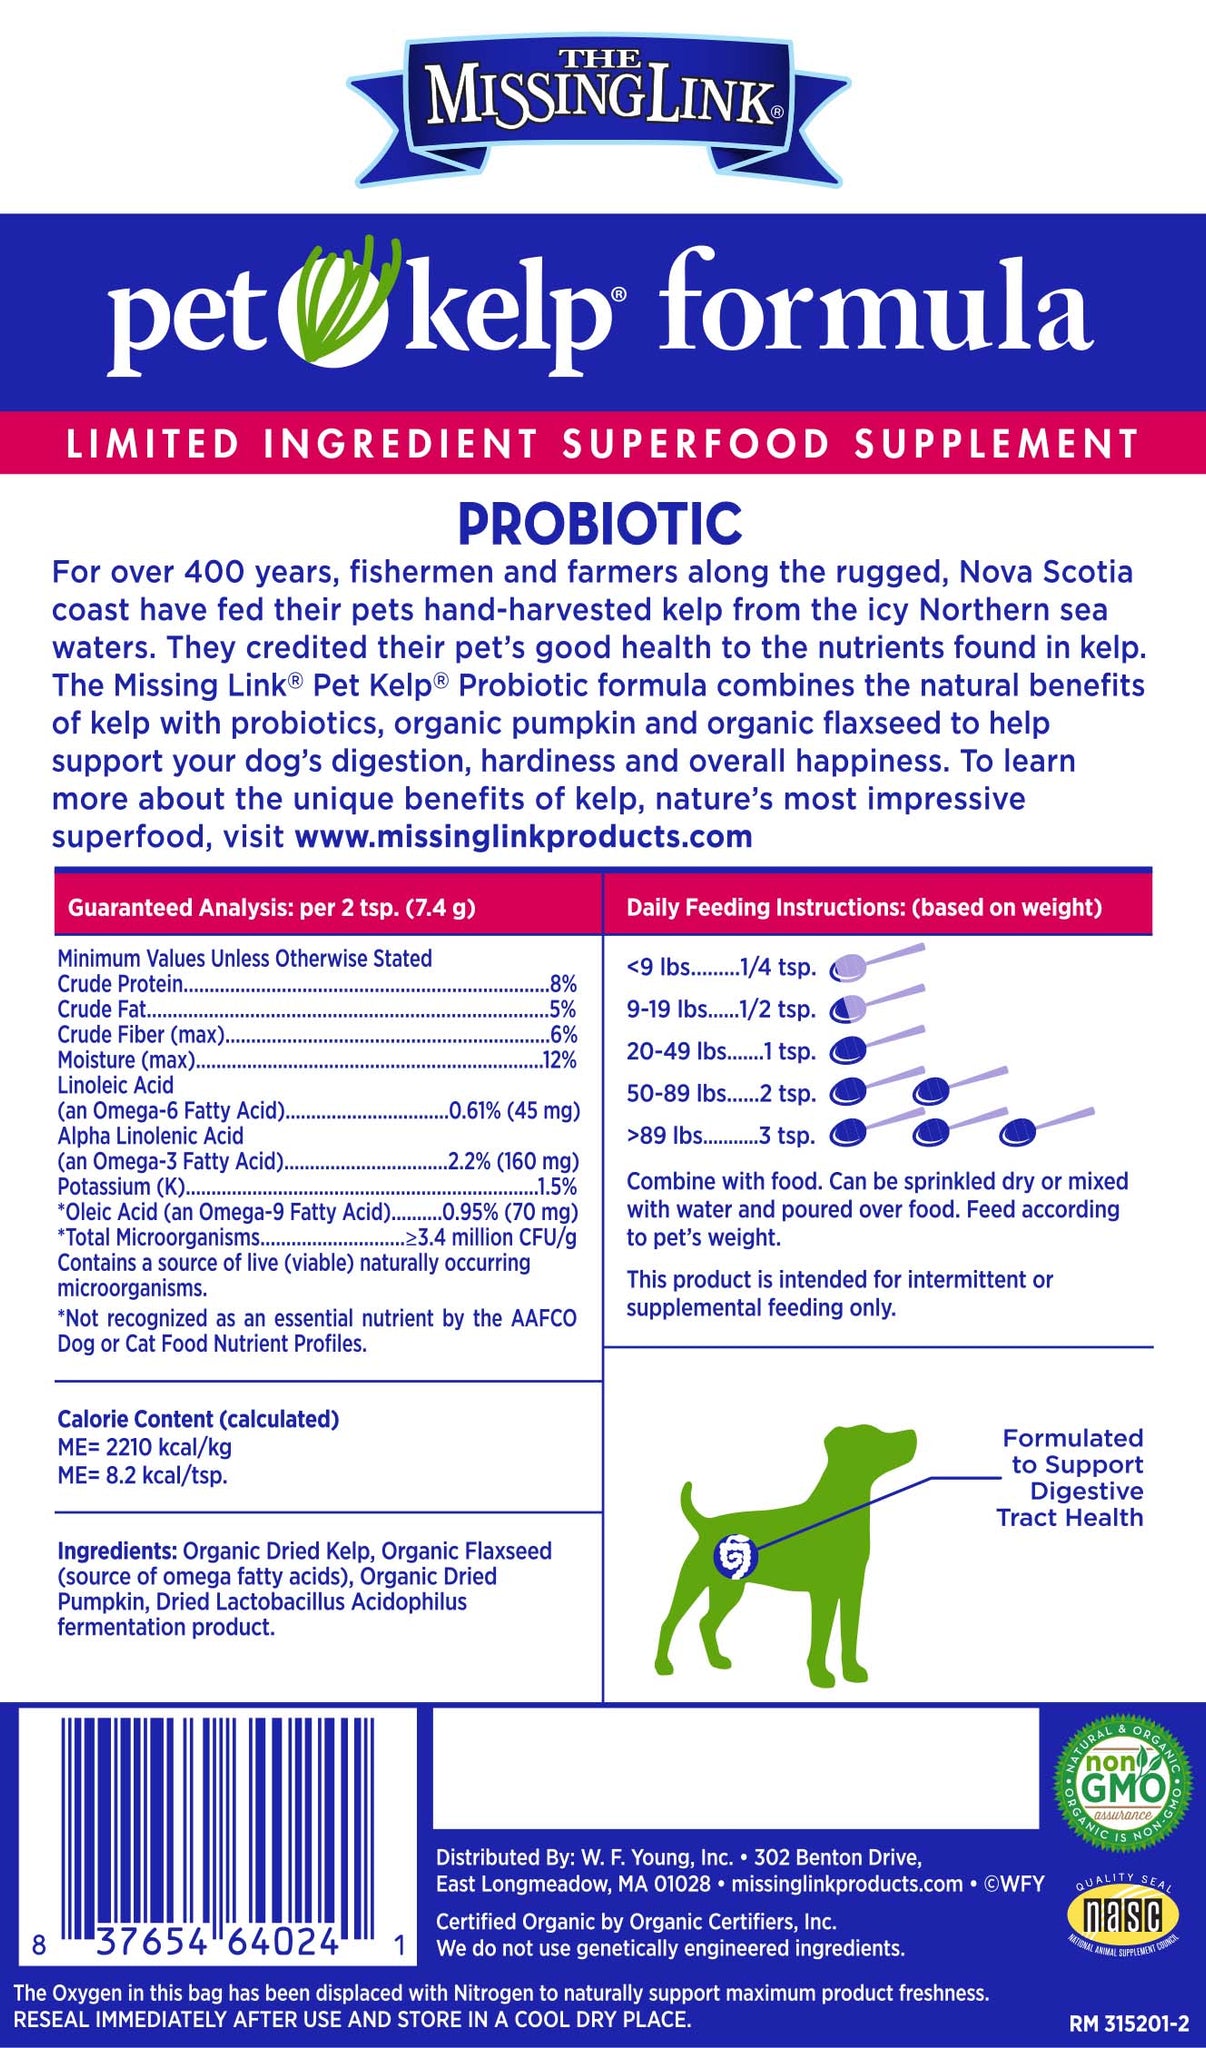 The Missing Link Probiotic pet kelp formula, limited ingredient superfood supplement back label.